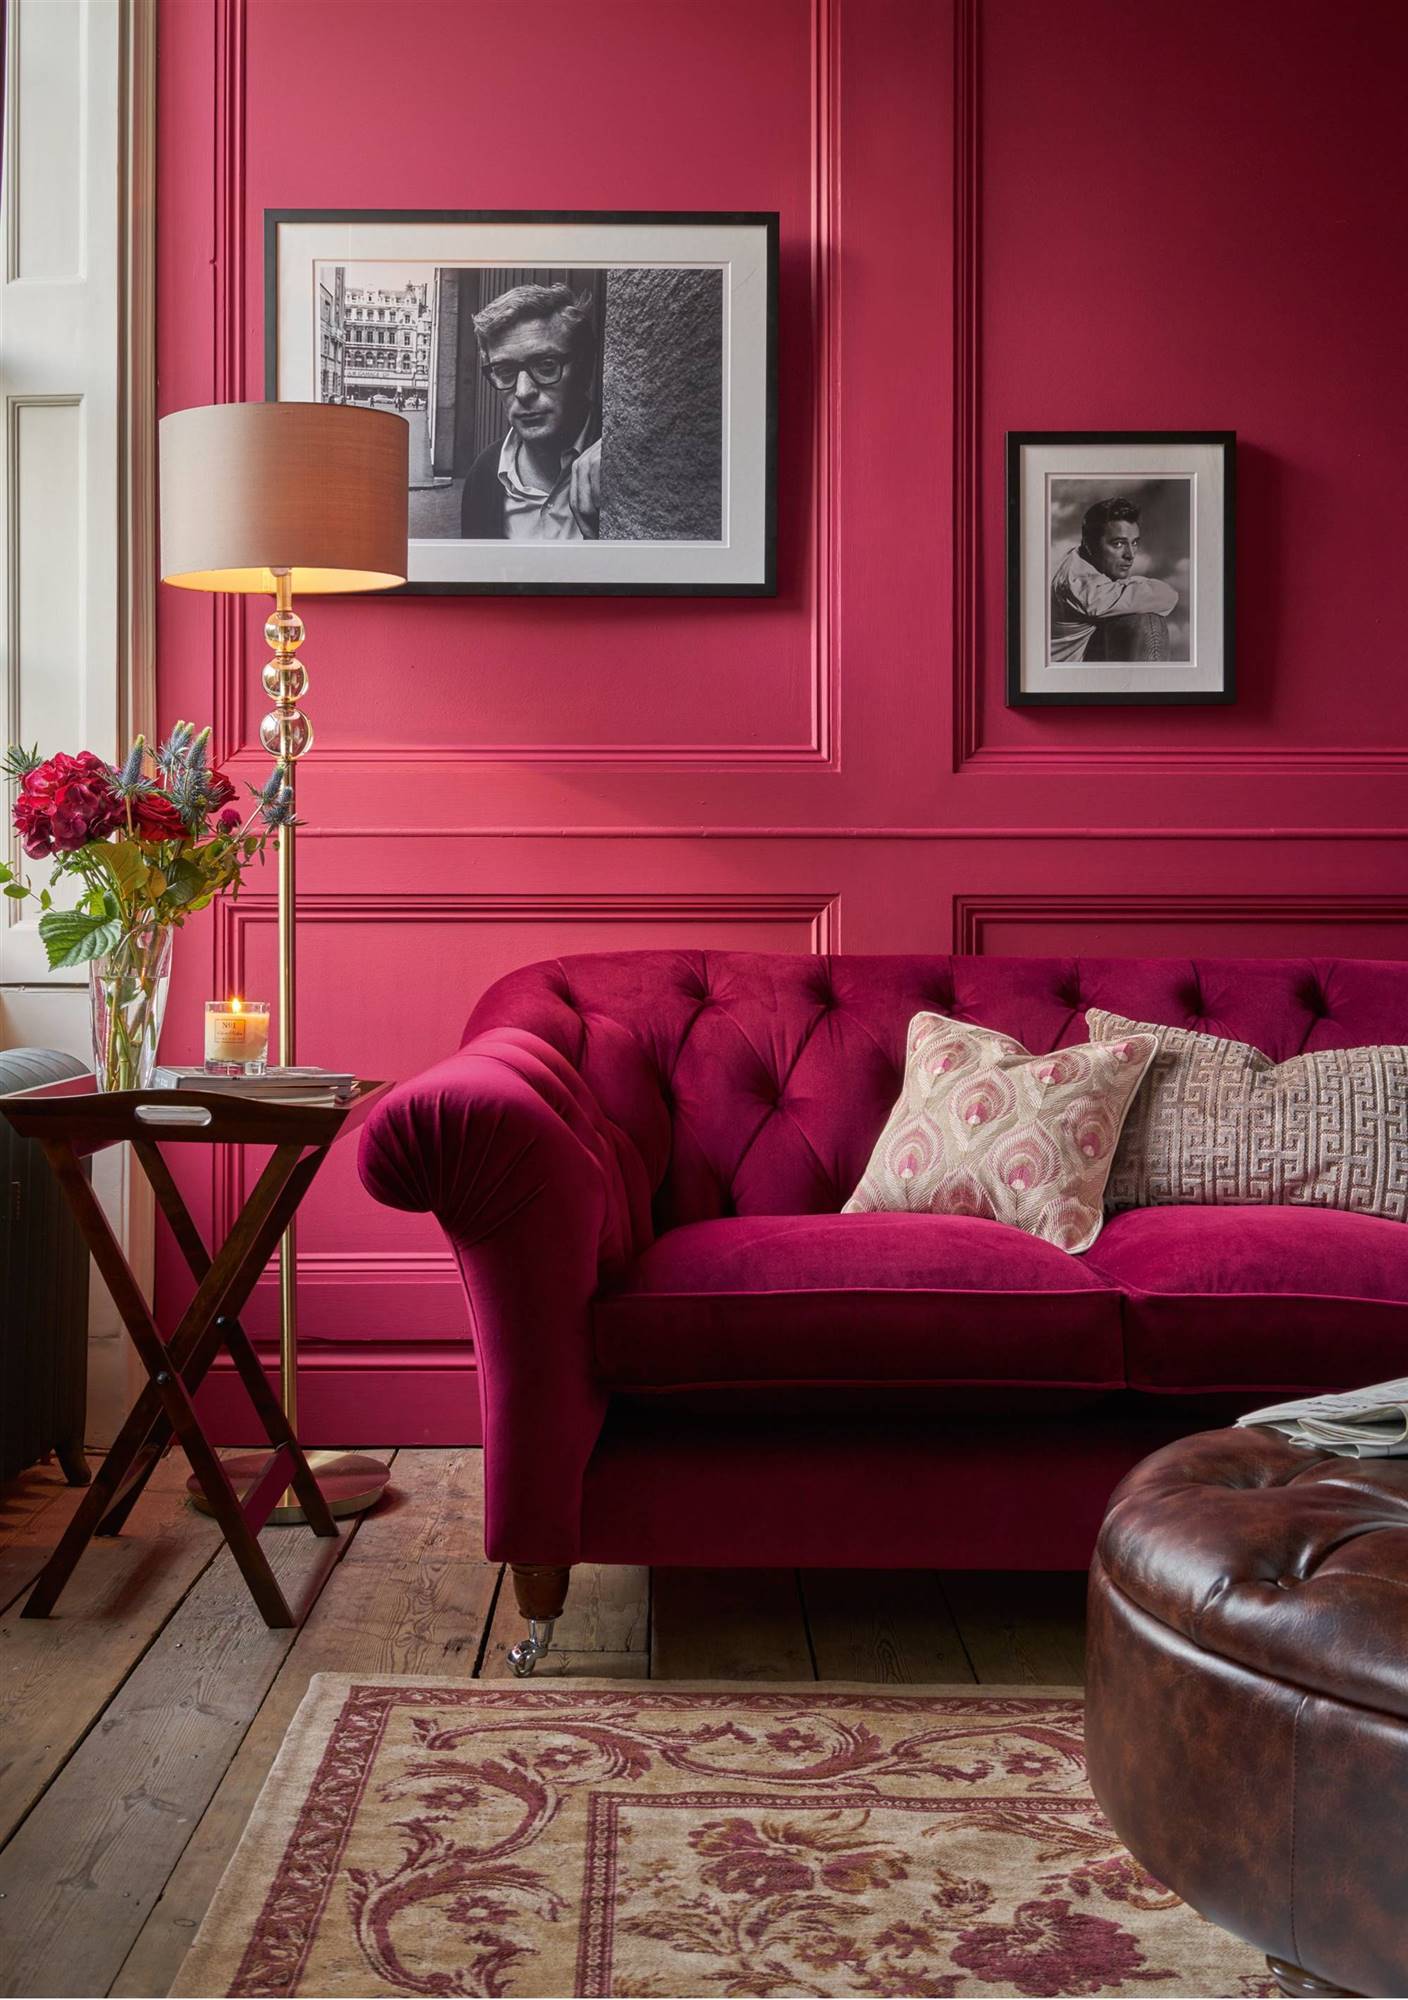 Salón de estilo clásico con pared en color magenta a juego con el sofá